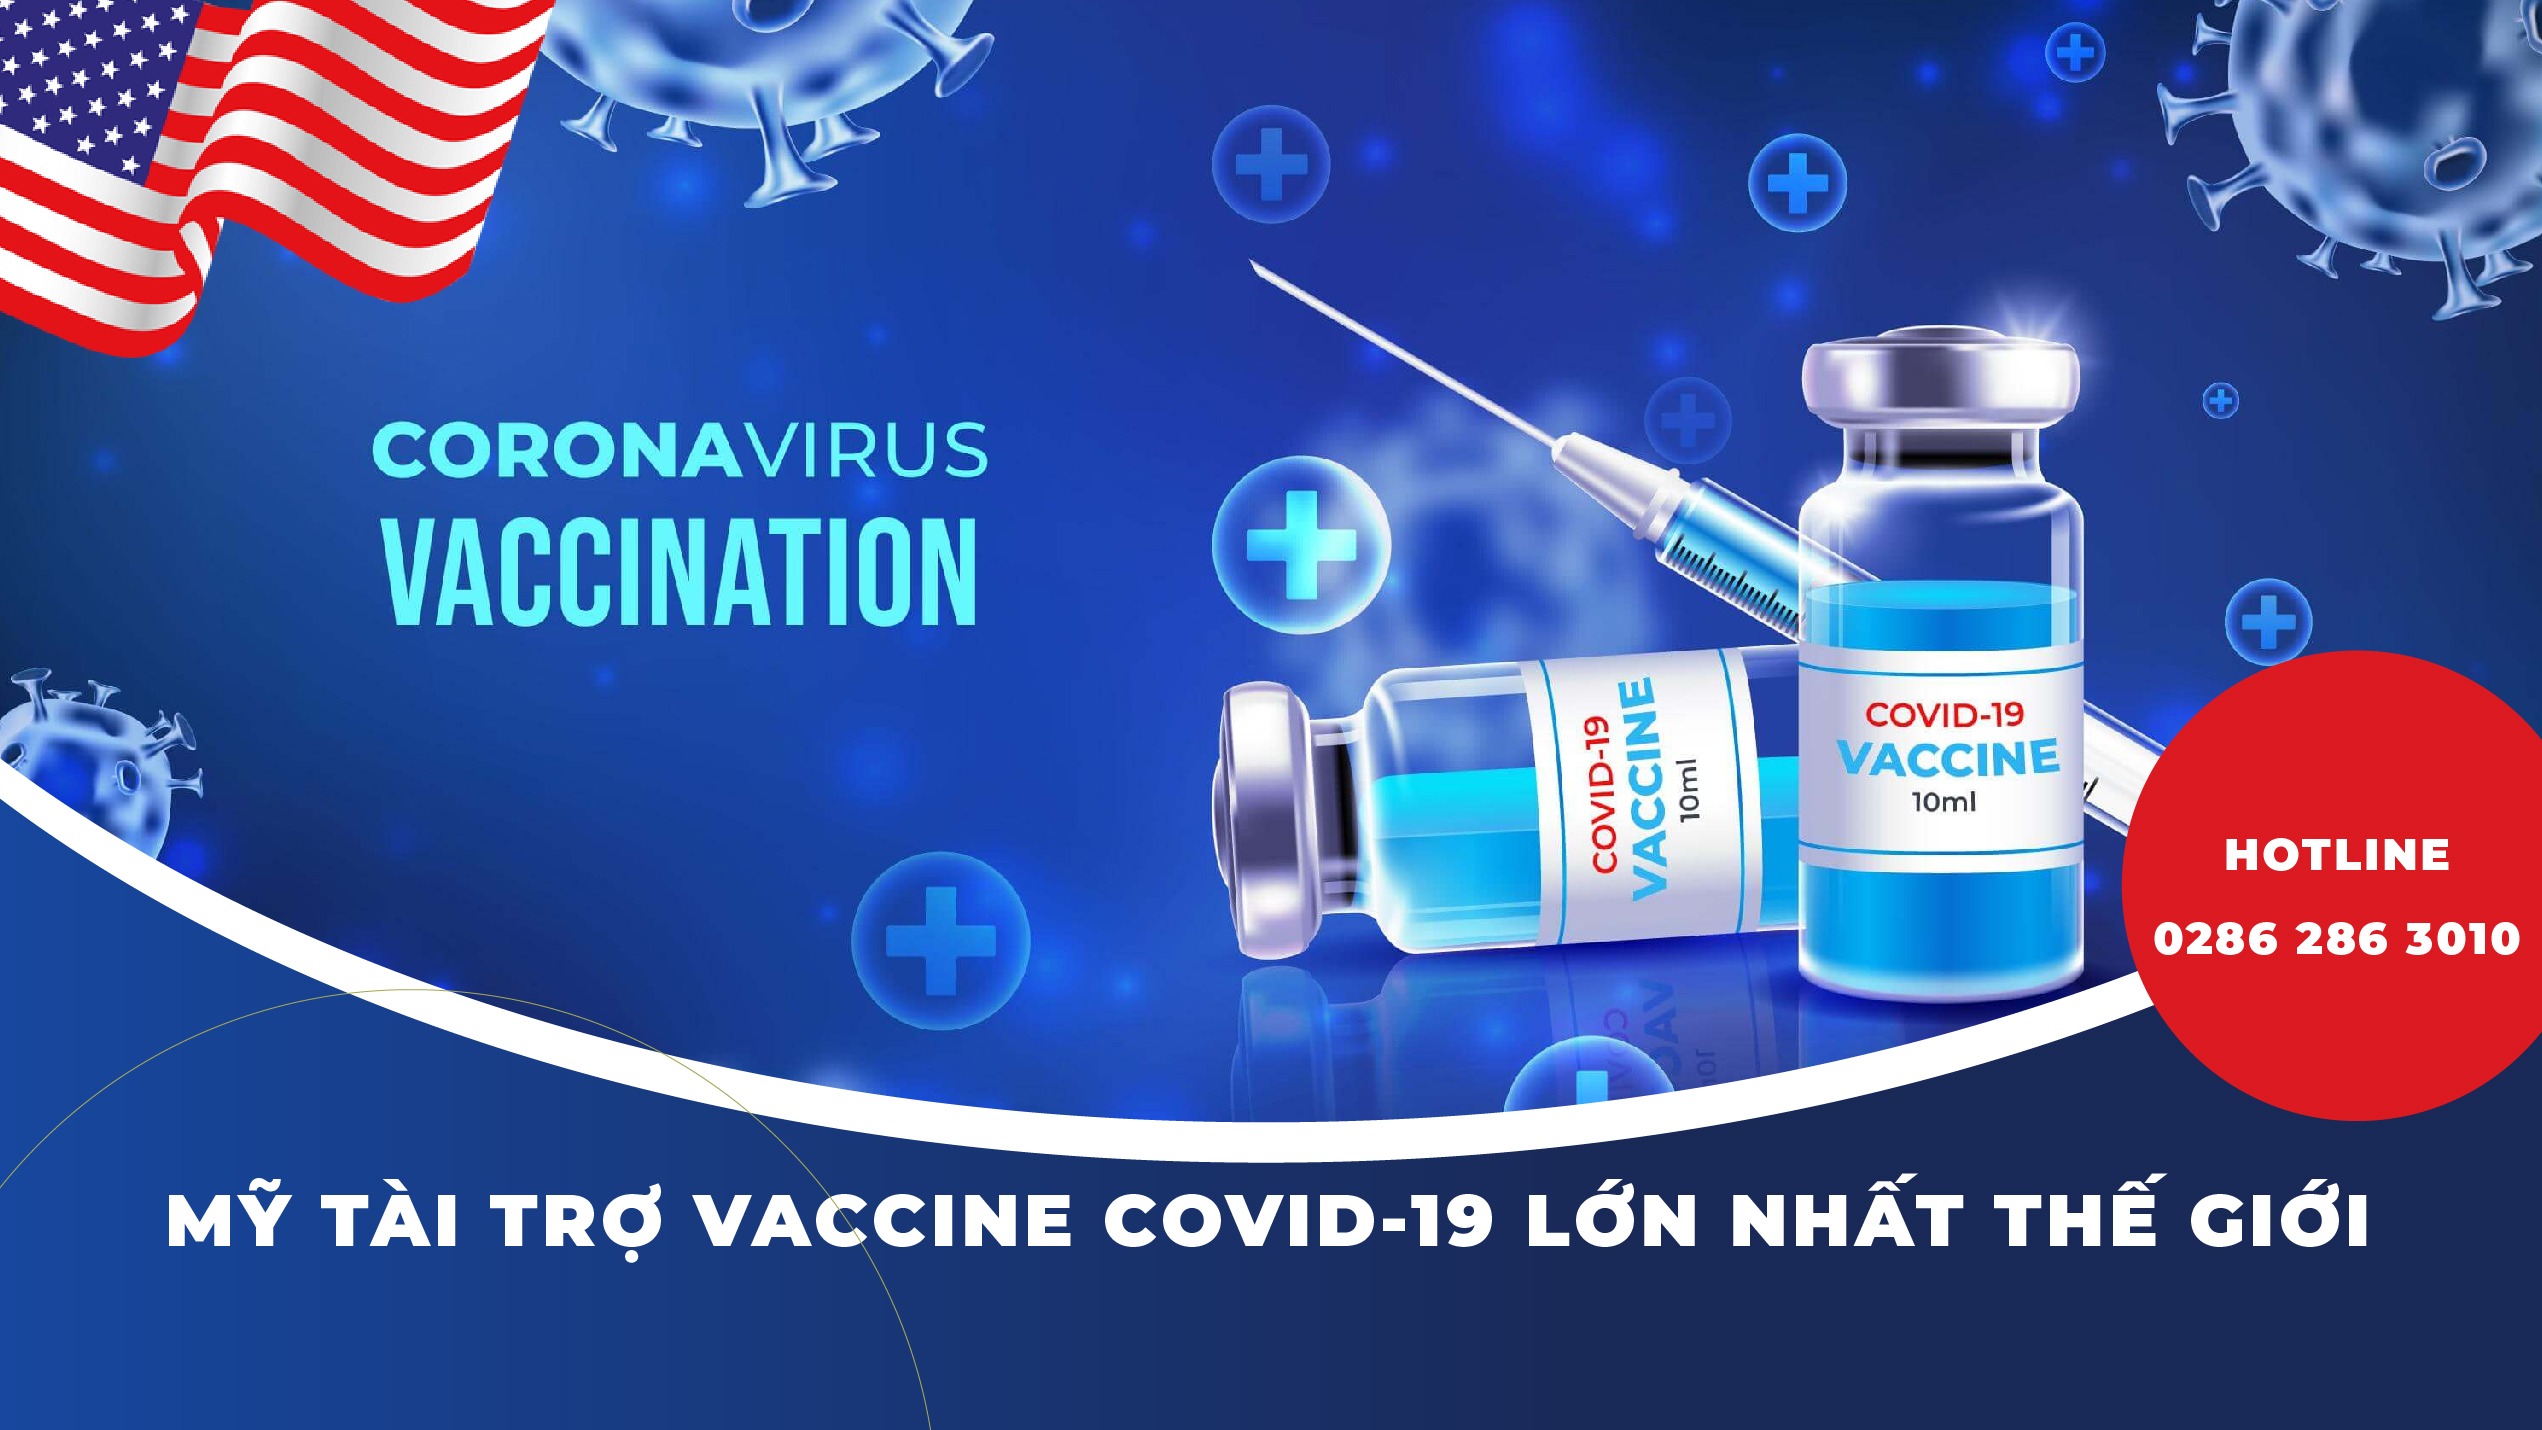 my-tai-tro-vaccine-covid-19-lon-nhat-the-gioi